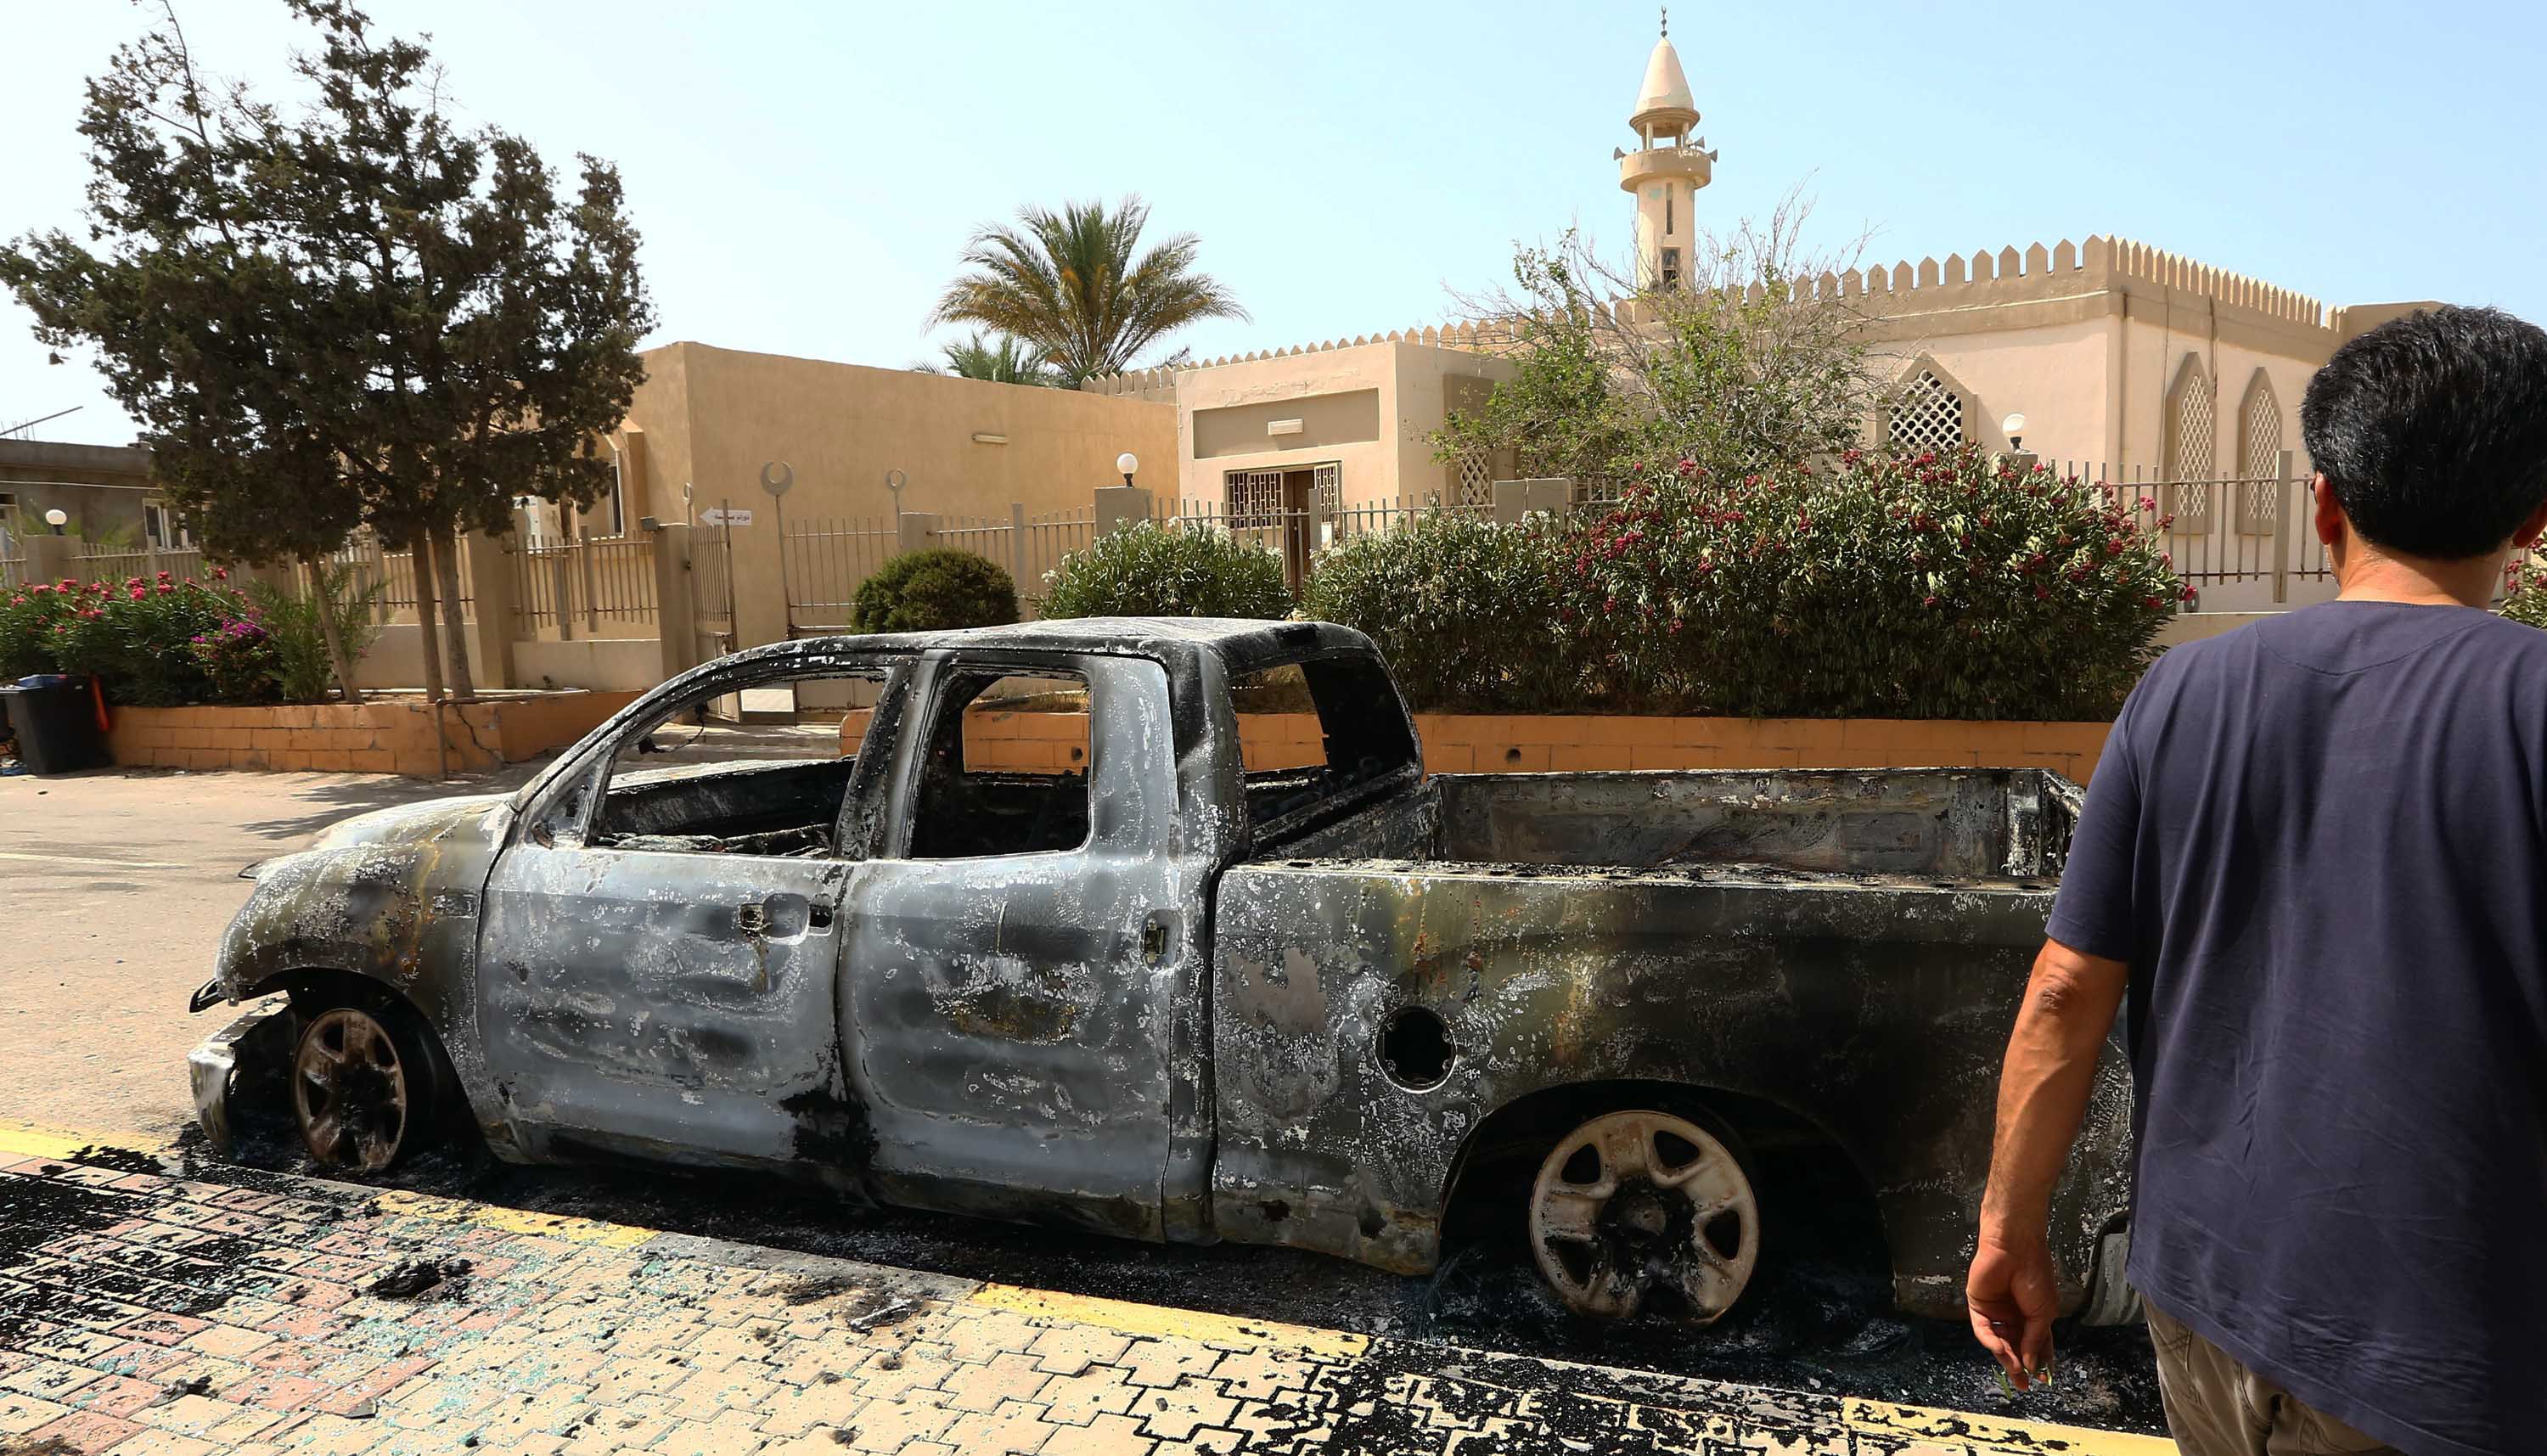 ليبيا معارك للسيطرة على مطار طرابلس وغرفة عمليات الثوار تستنفر وتحذر حفتر 